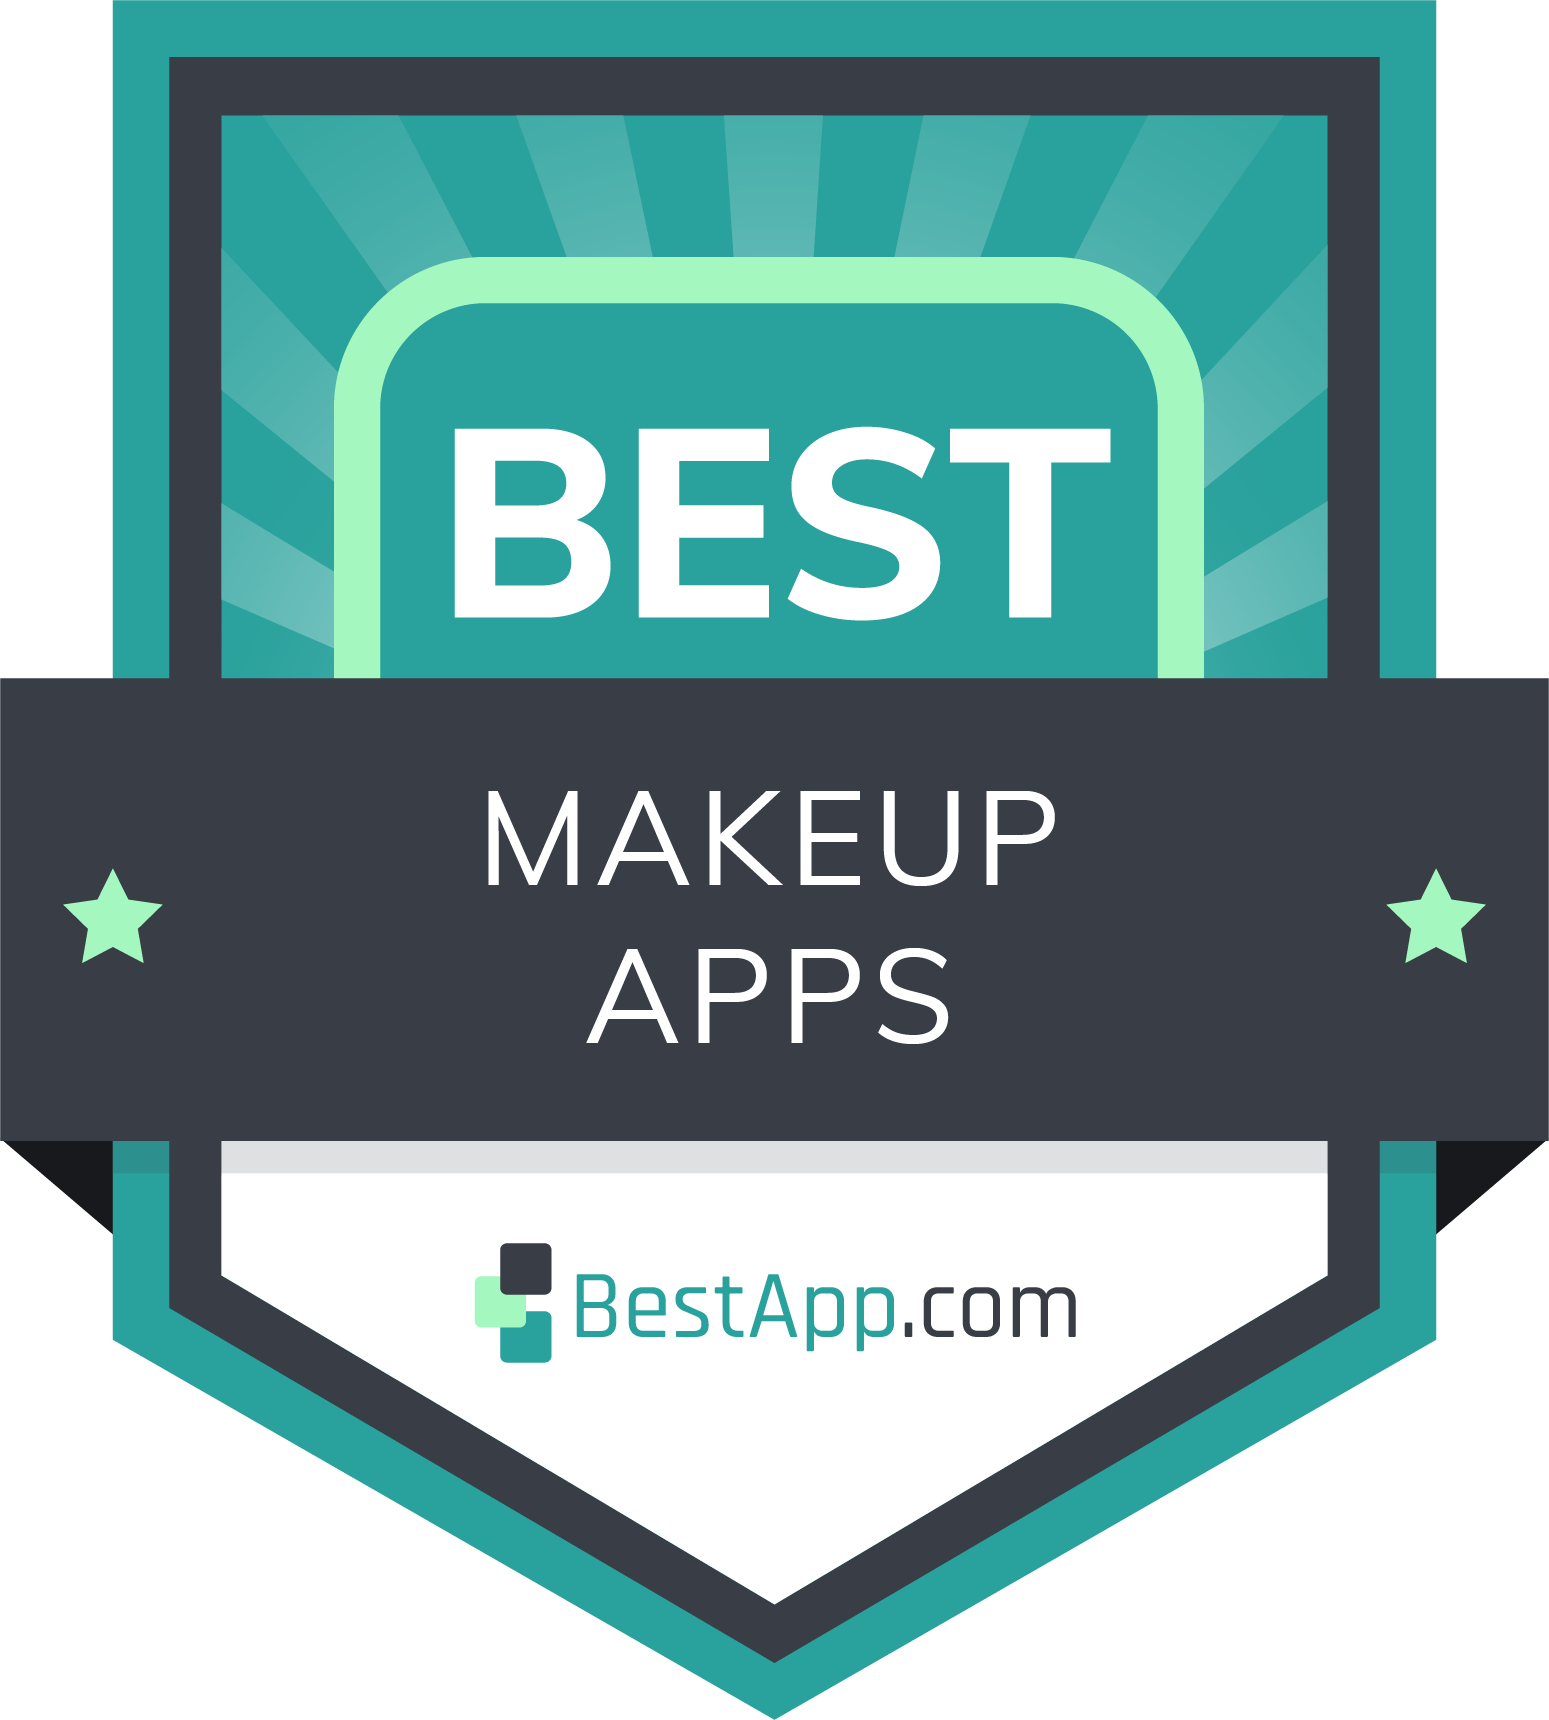 Best Makeup Apps Badge